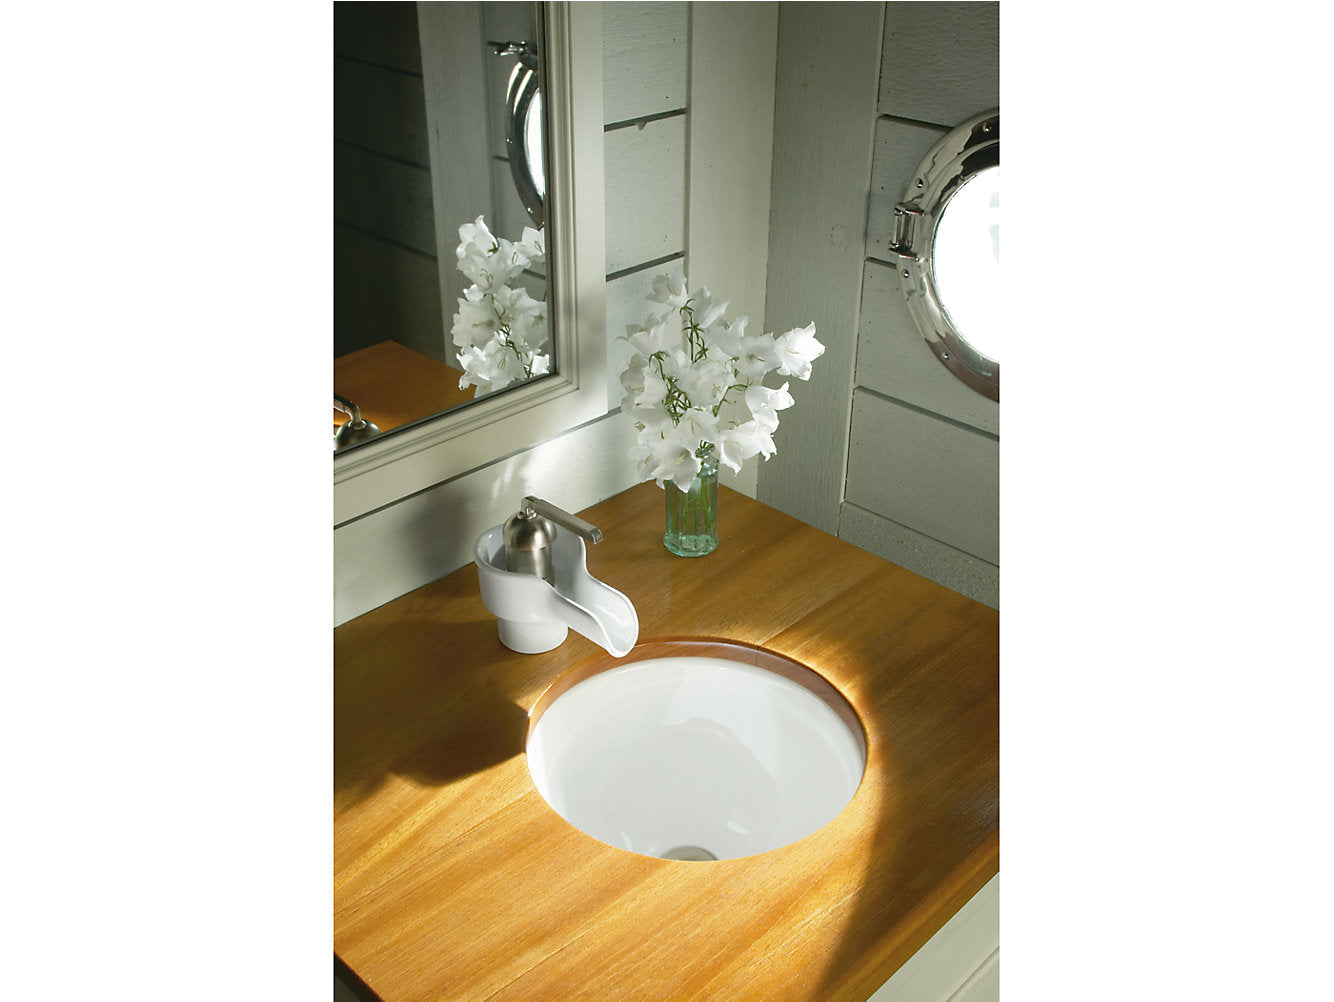 Kohler Compass 13-1/4" Drop-in Undermount Bathroom Sink - White